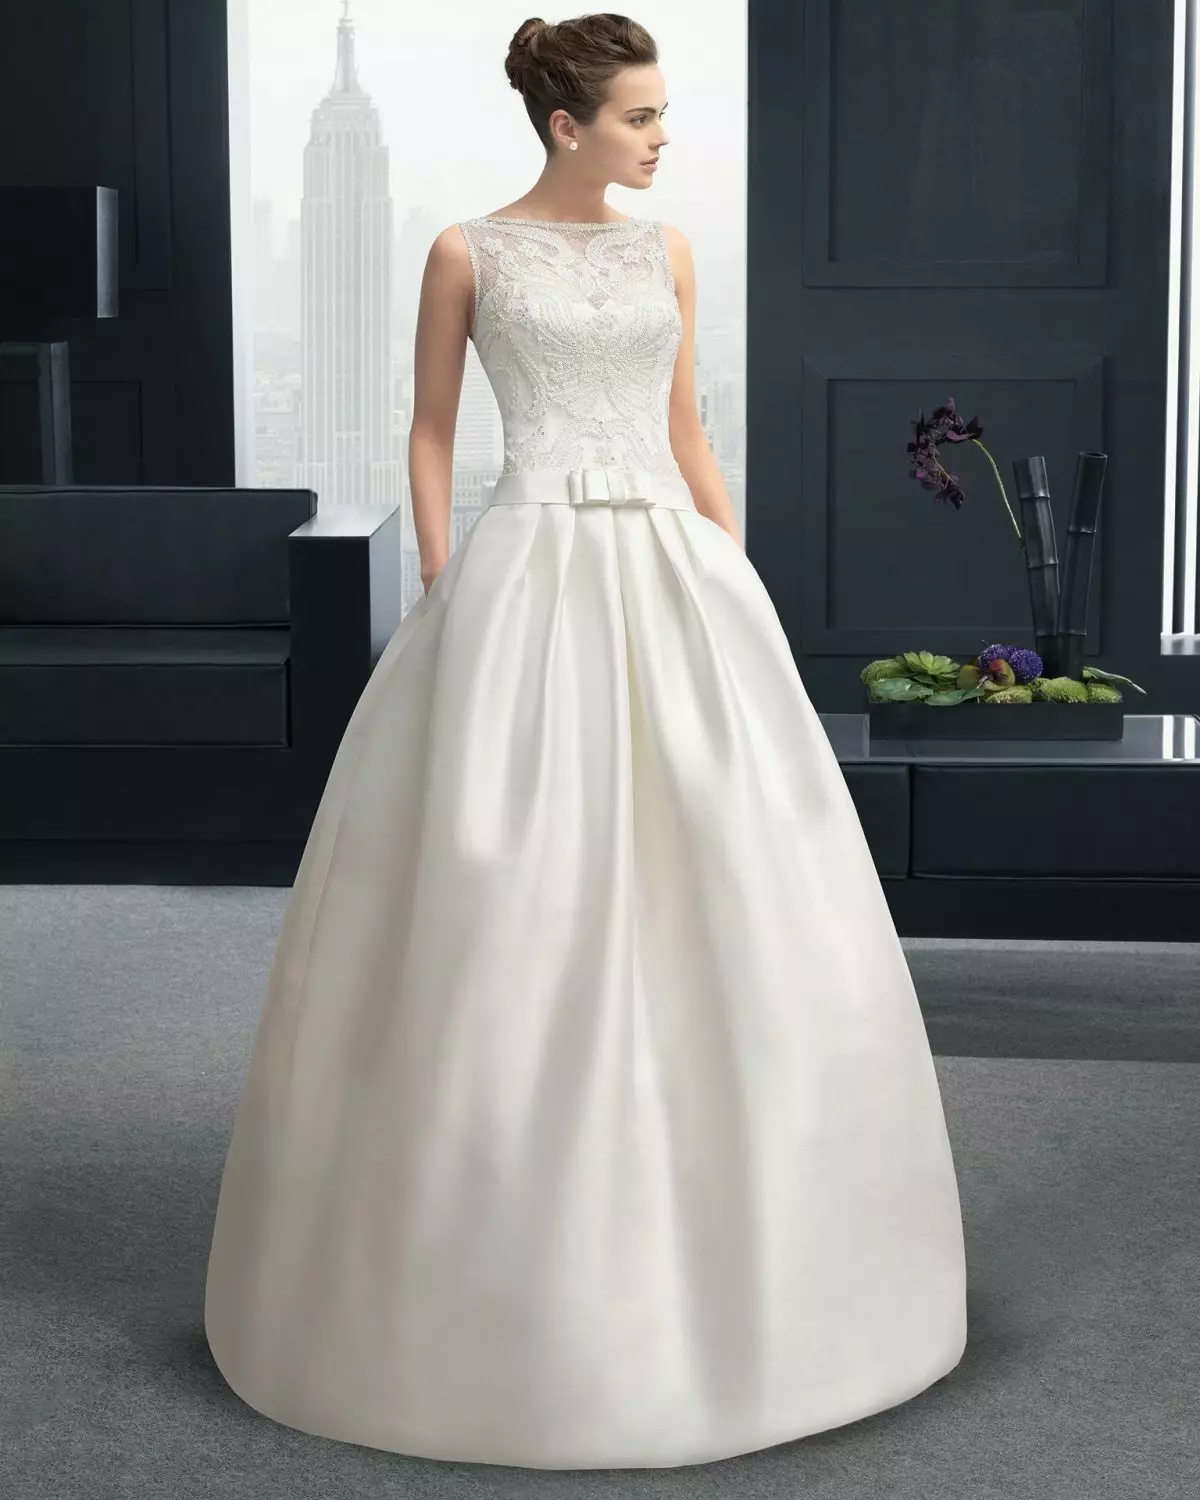 Bujna poročna obleka s čipkastim korzetom